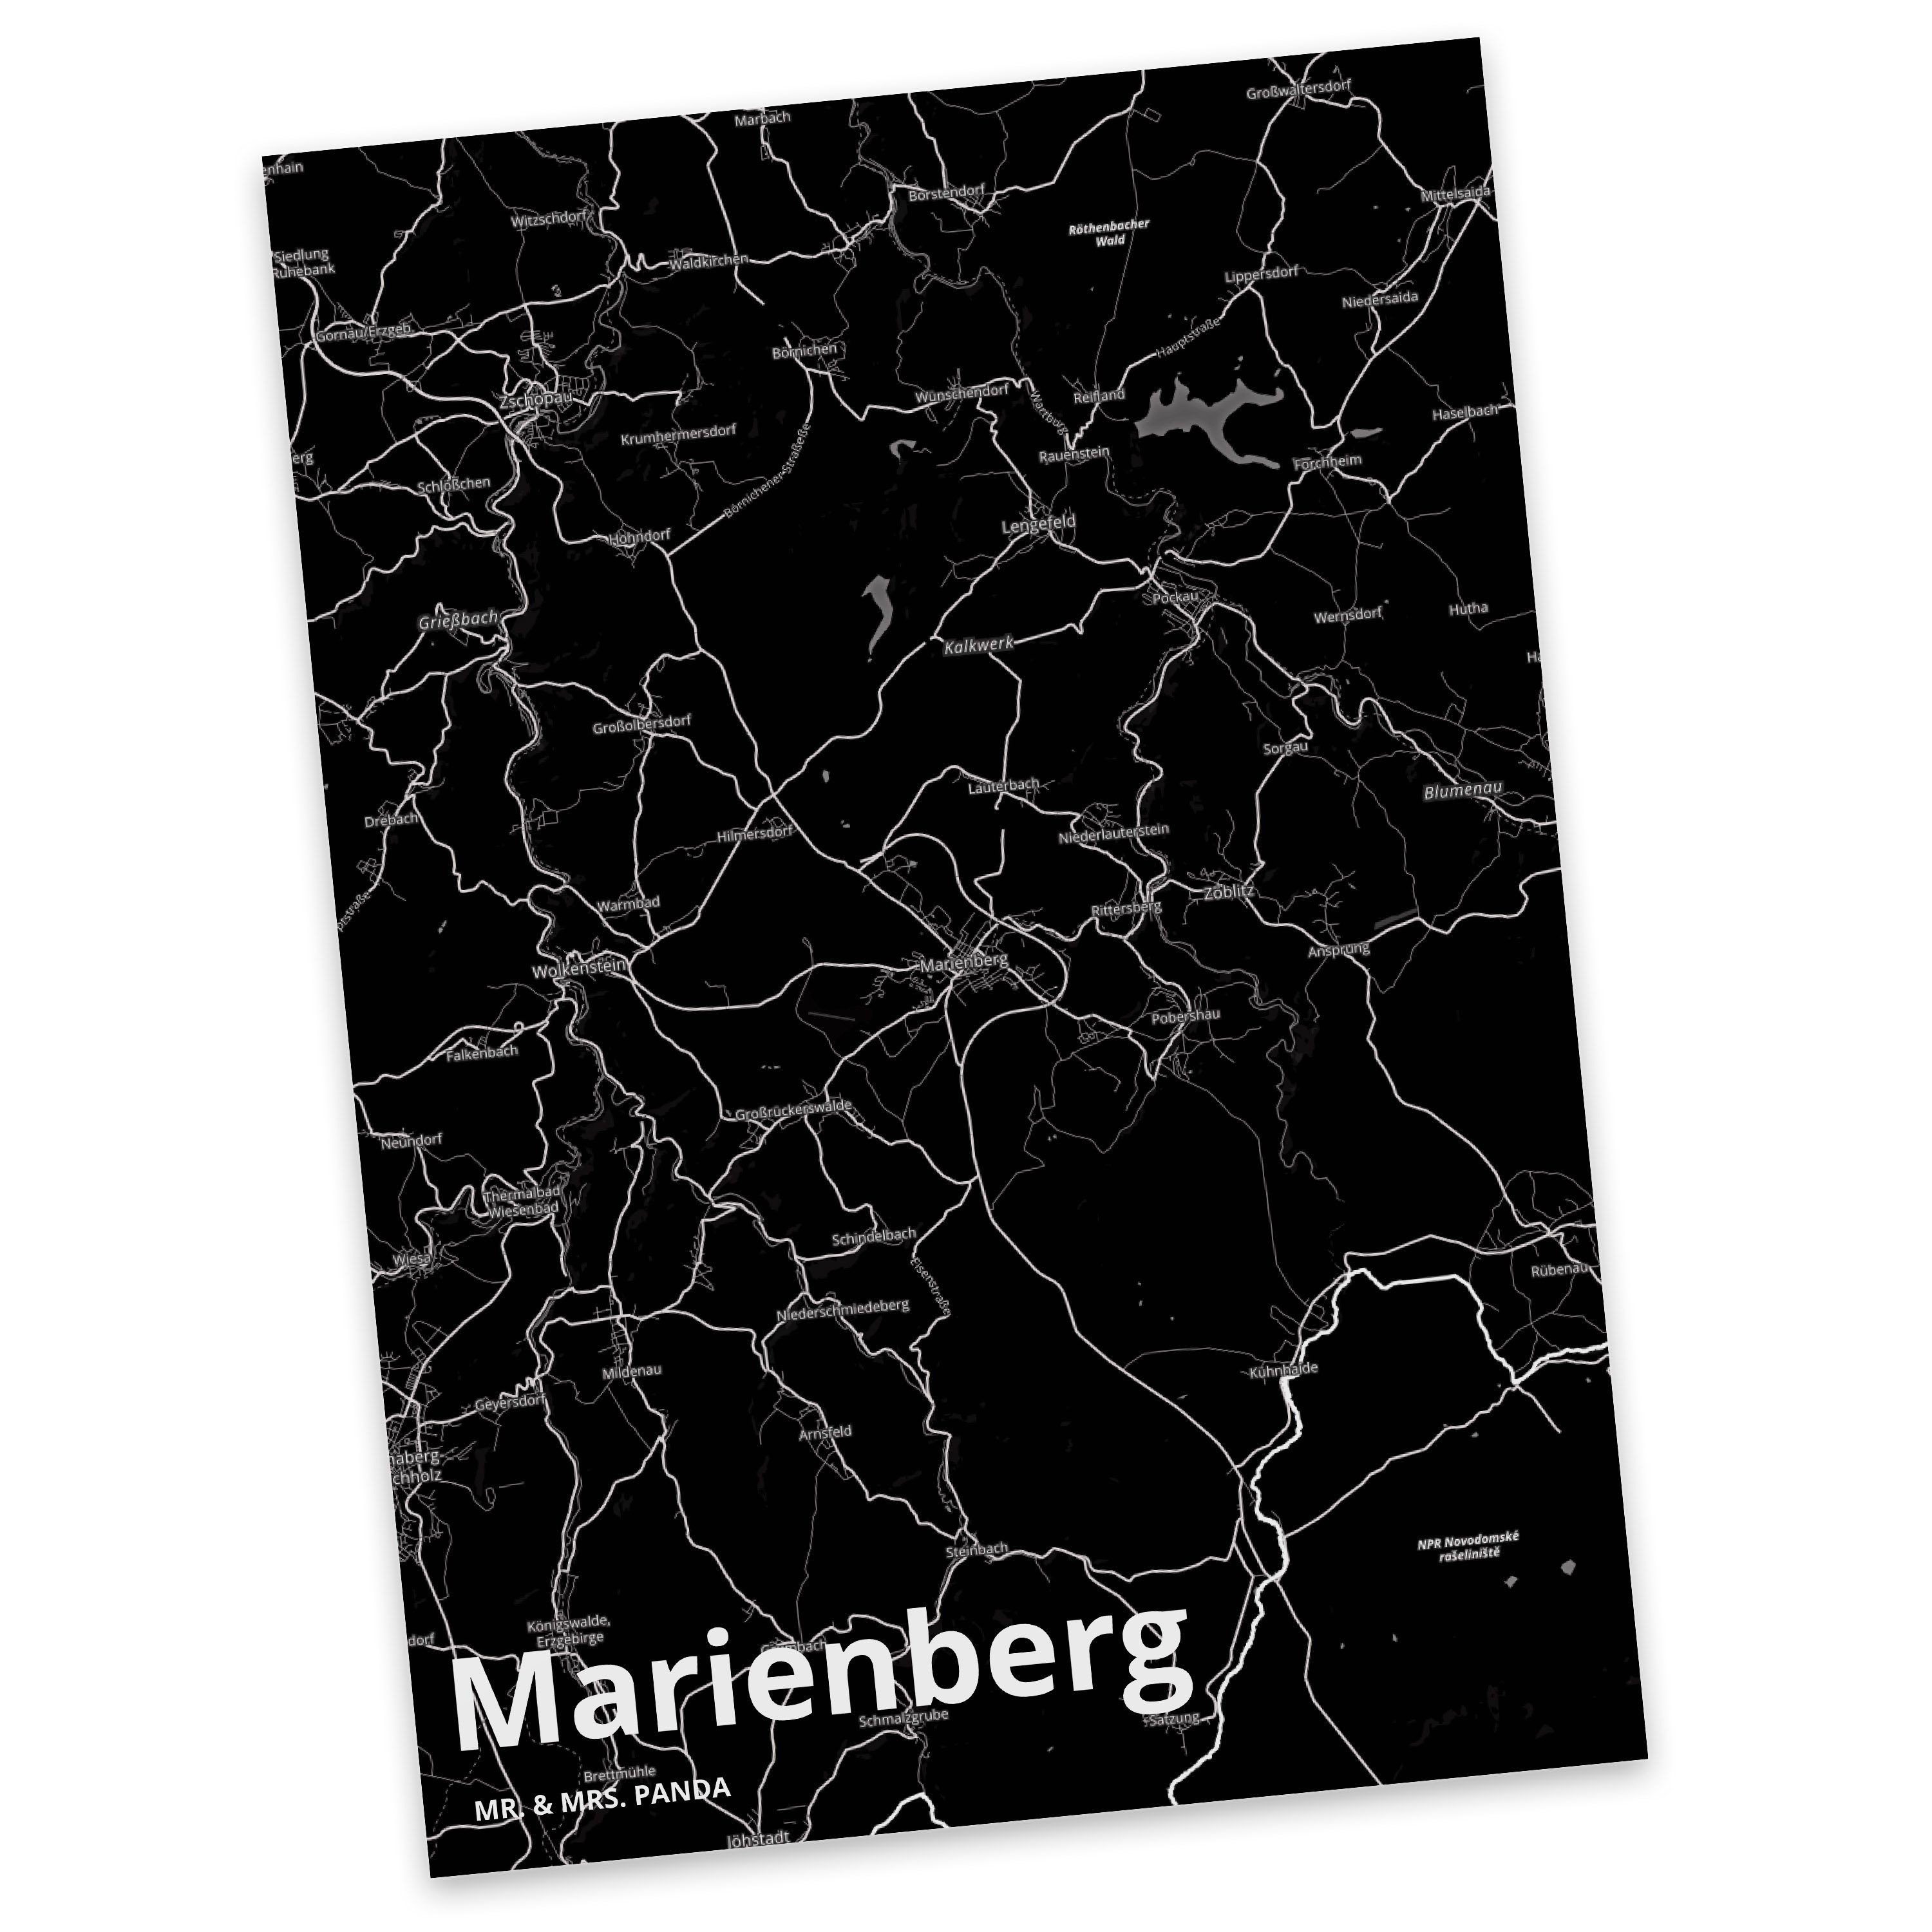 Mr. & Mrs. Panda Postkarte Marienberg - Geschenk, Stadt, Stadt Dorf Karte Landkarte Map Stadtpla